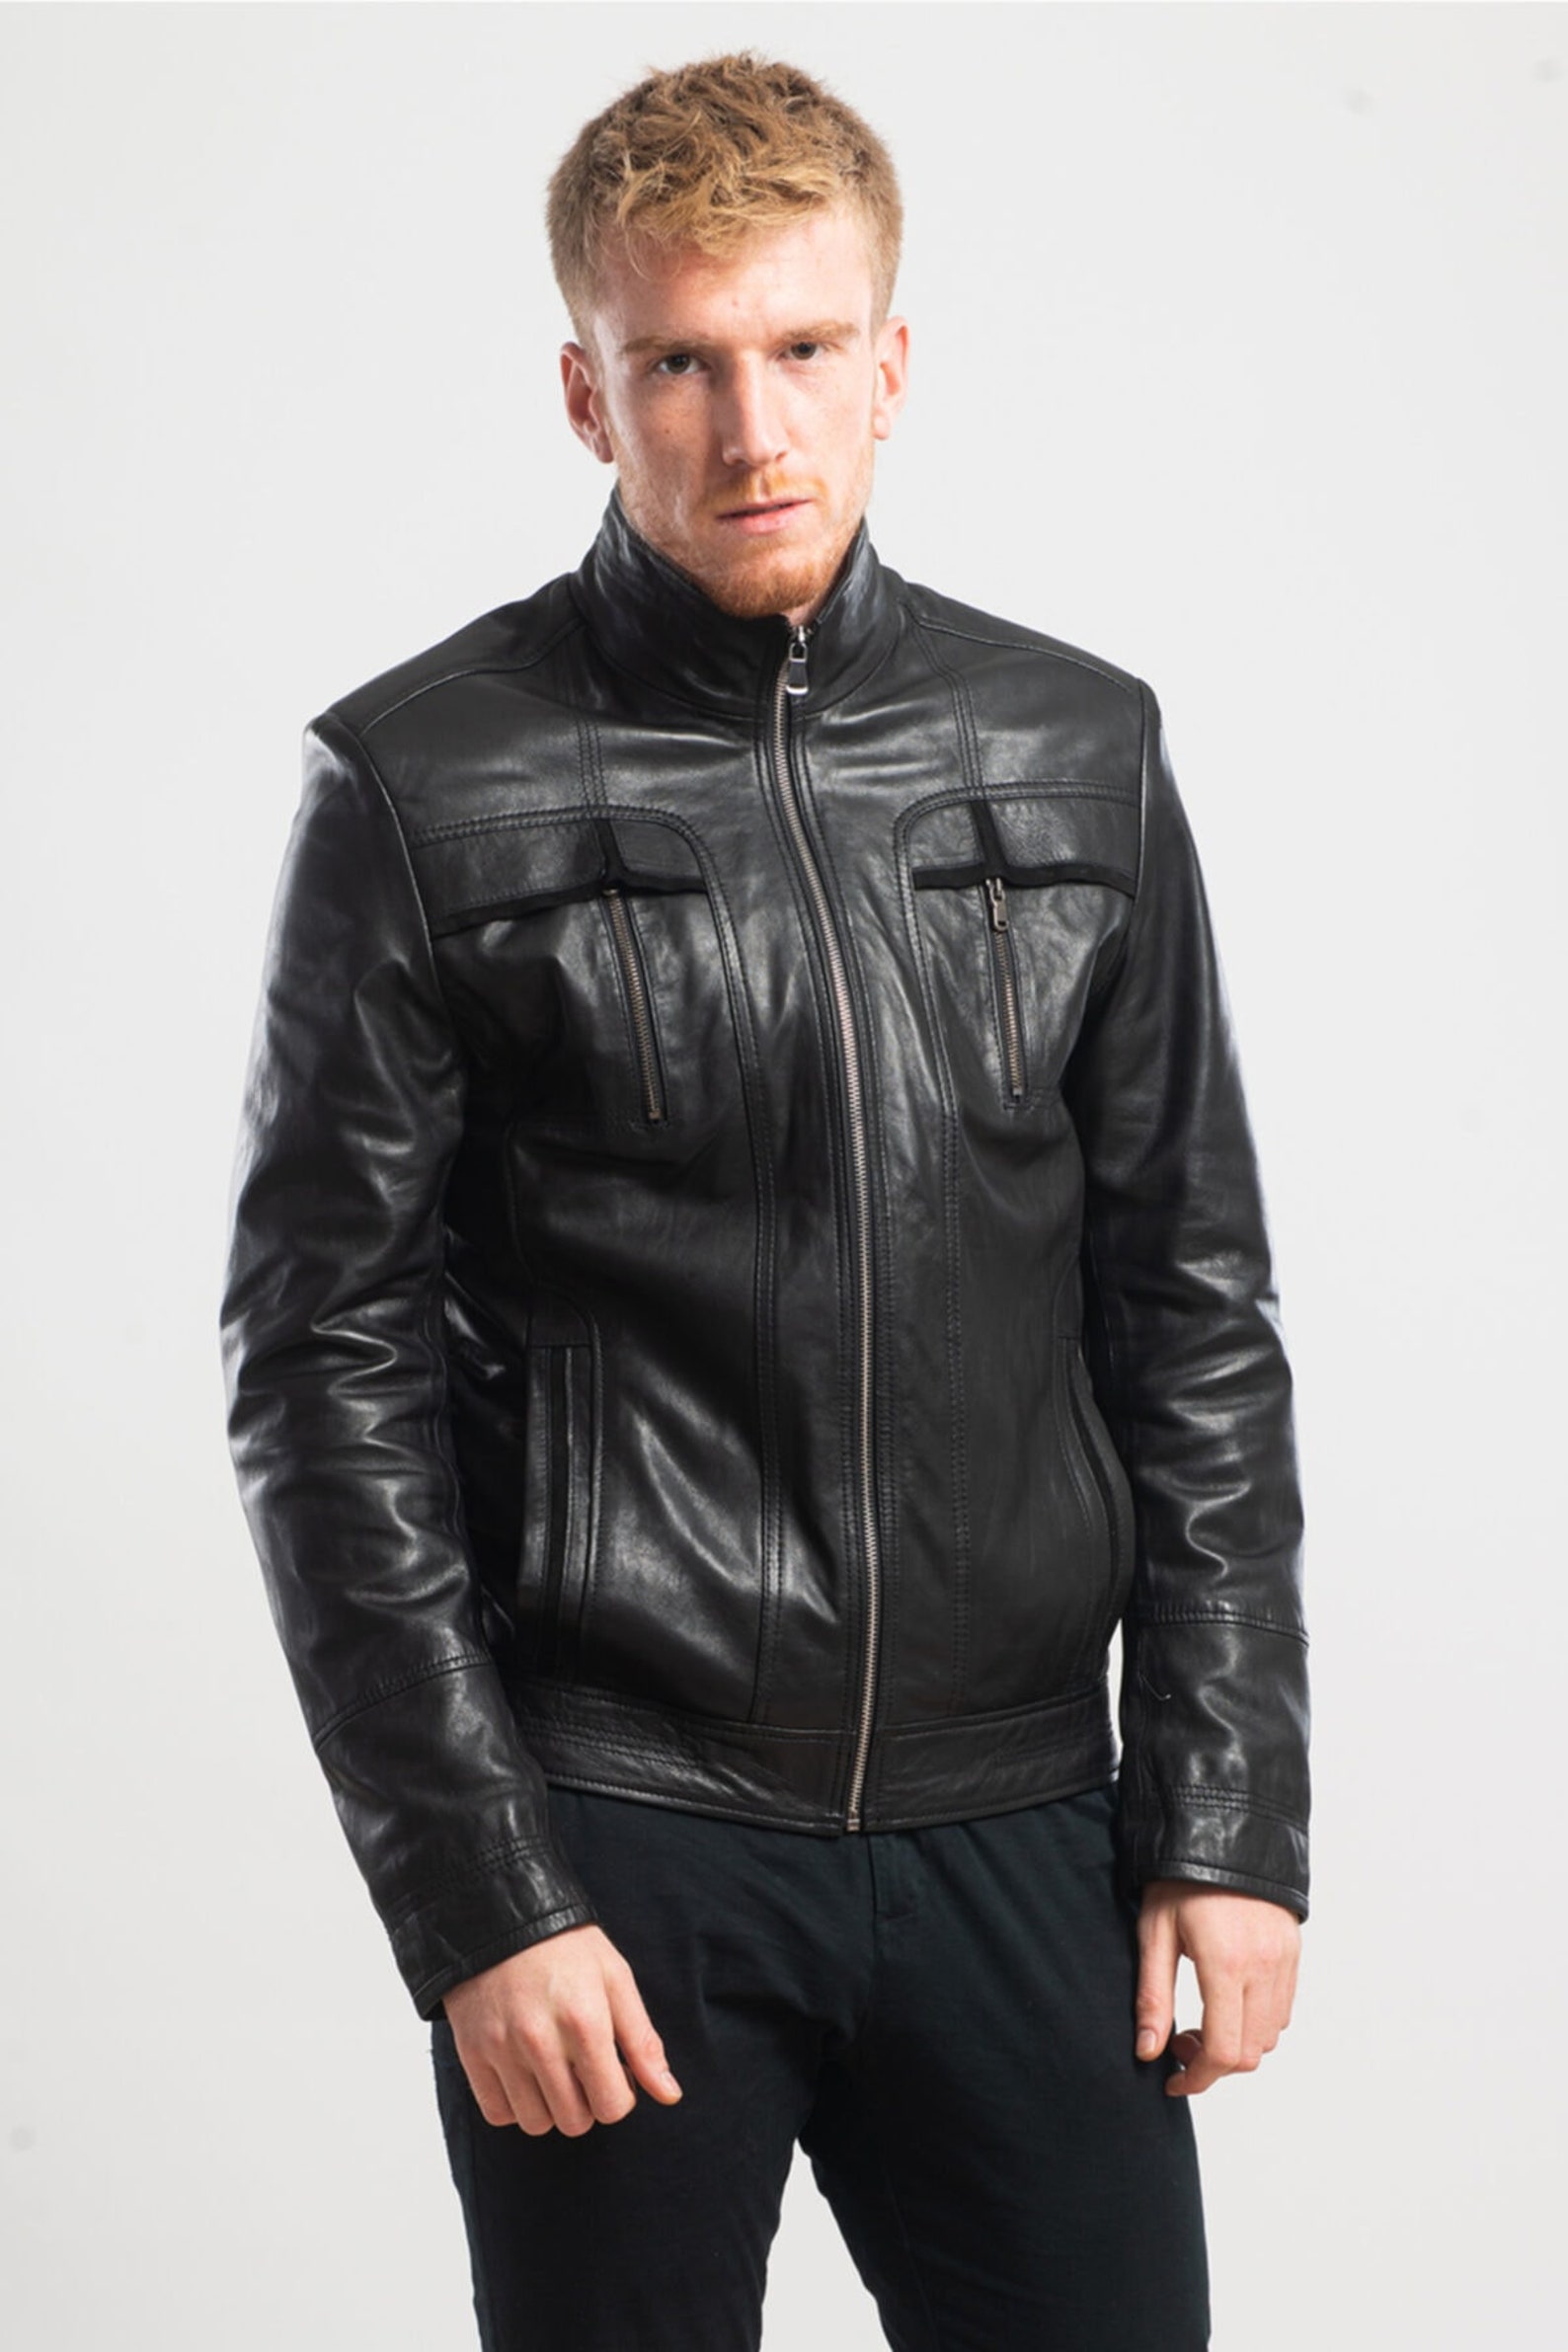 Handmade Multi-Pocket Black Leather Jacket Lamb Skin Jacket | Etsy